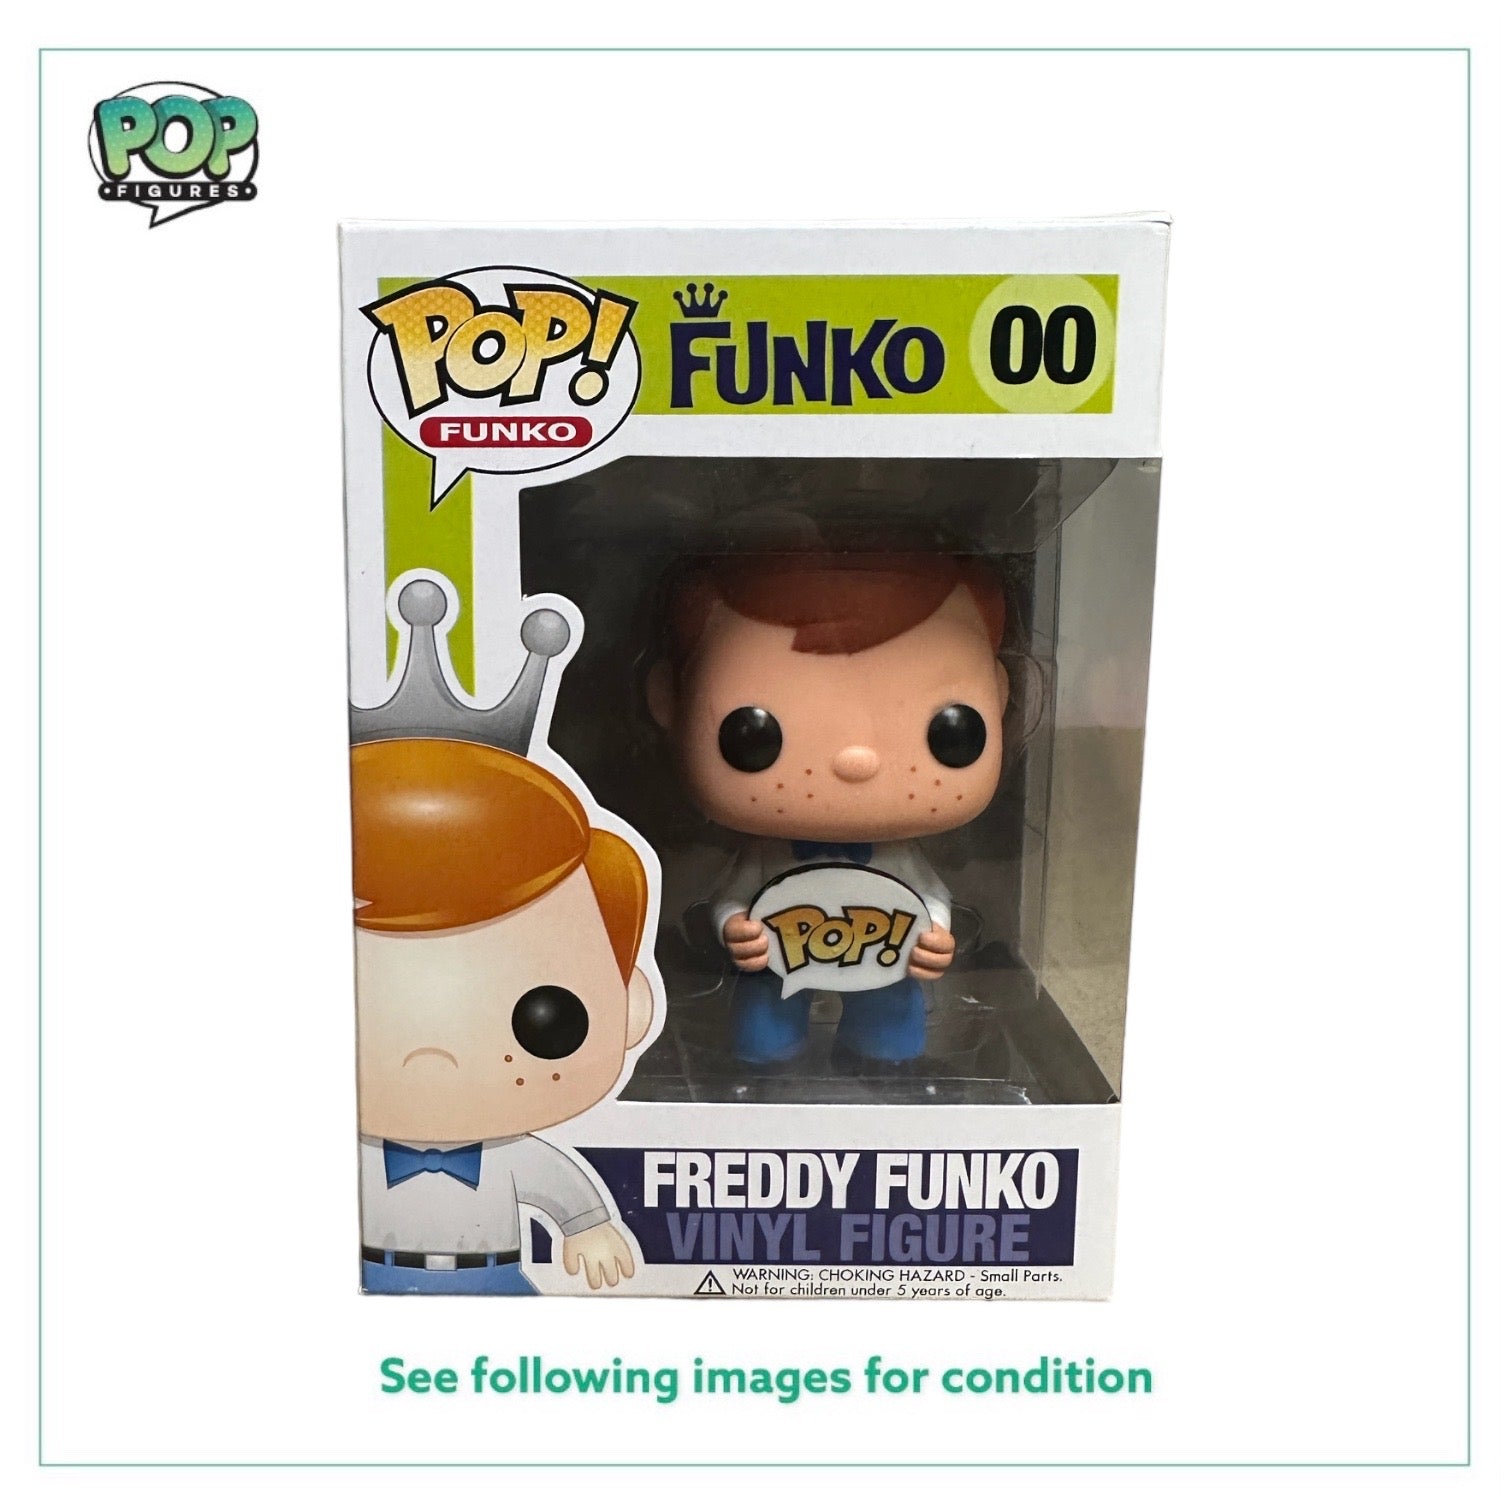 Freddy Funko #00 (Blue Tie) Funko Pop! - LE500 Pcs - Condition 8.75/10